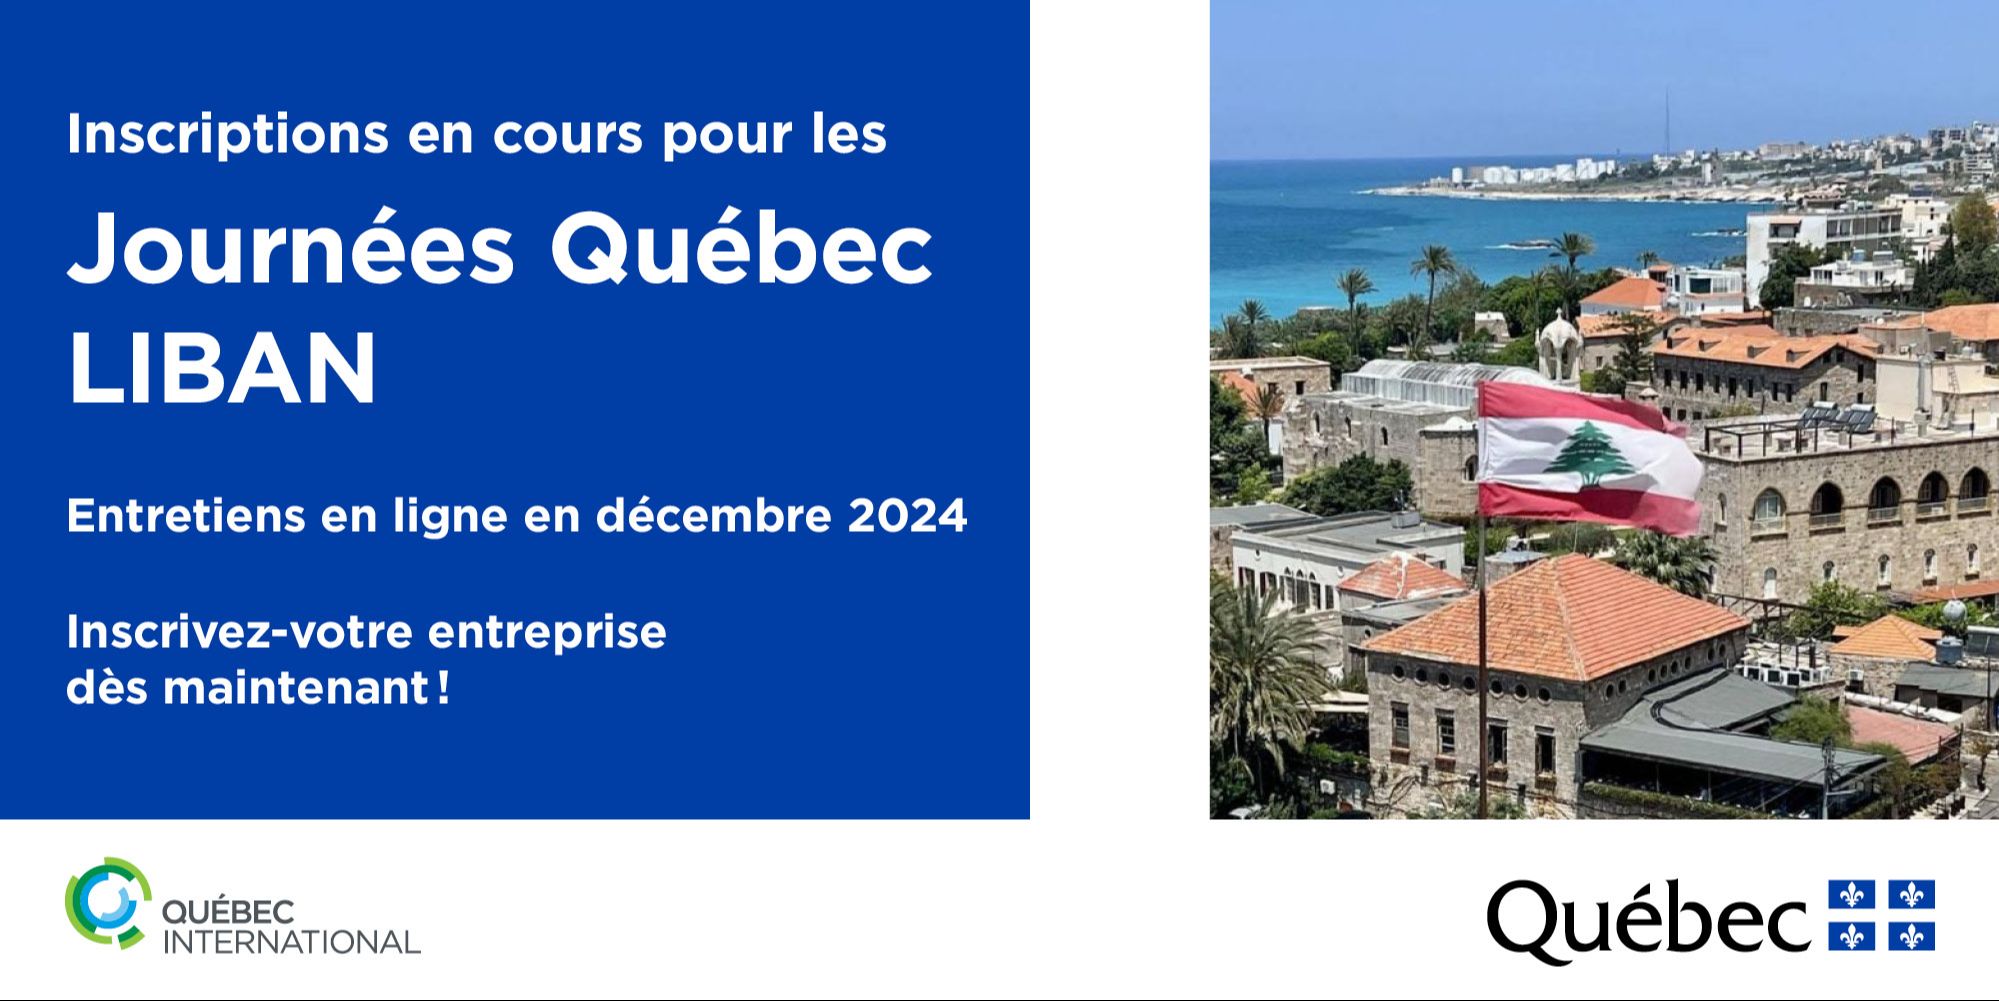 Inscription aux Journées Québec LIBAN en cours (Entretiens en décembre 2024)